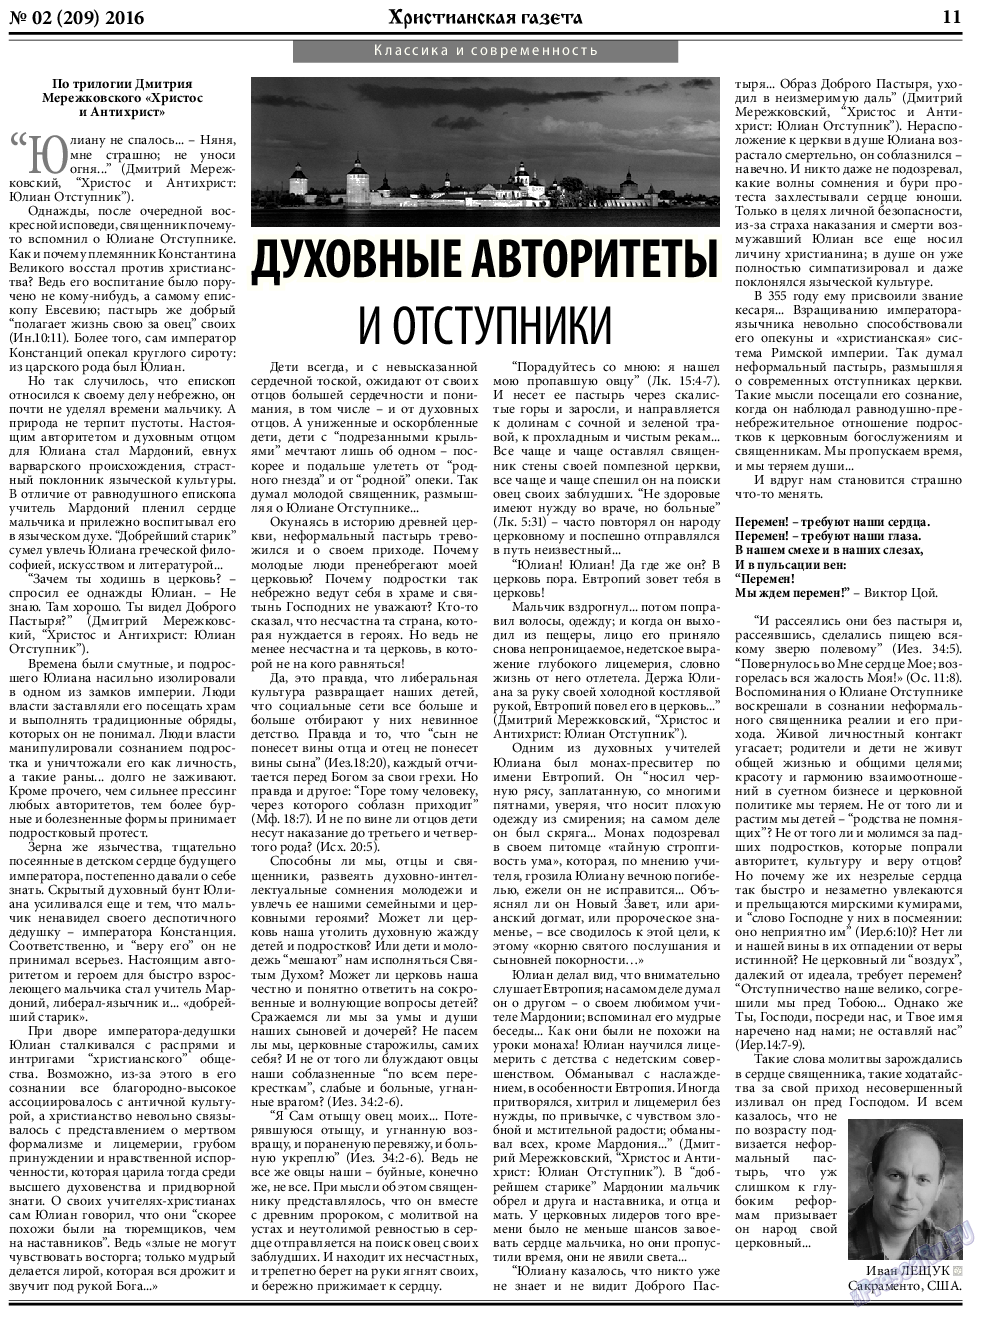 Христианская газета, газета. 2016 №2 стр.11